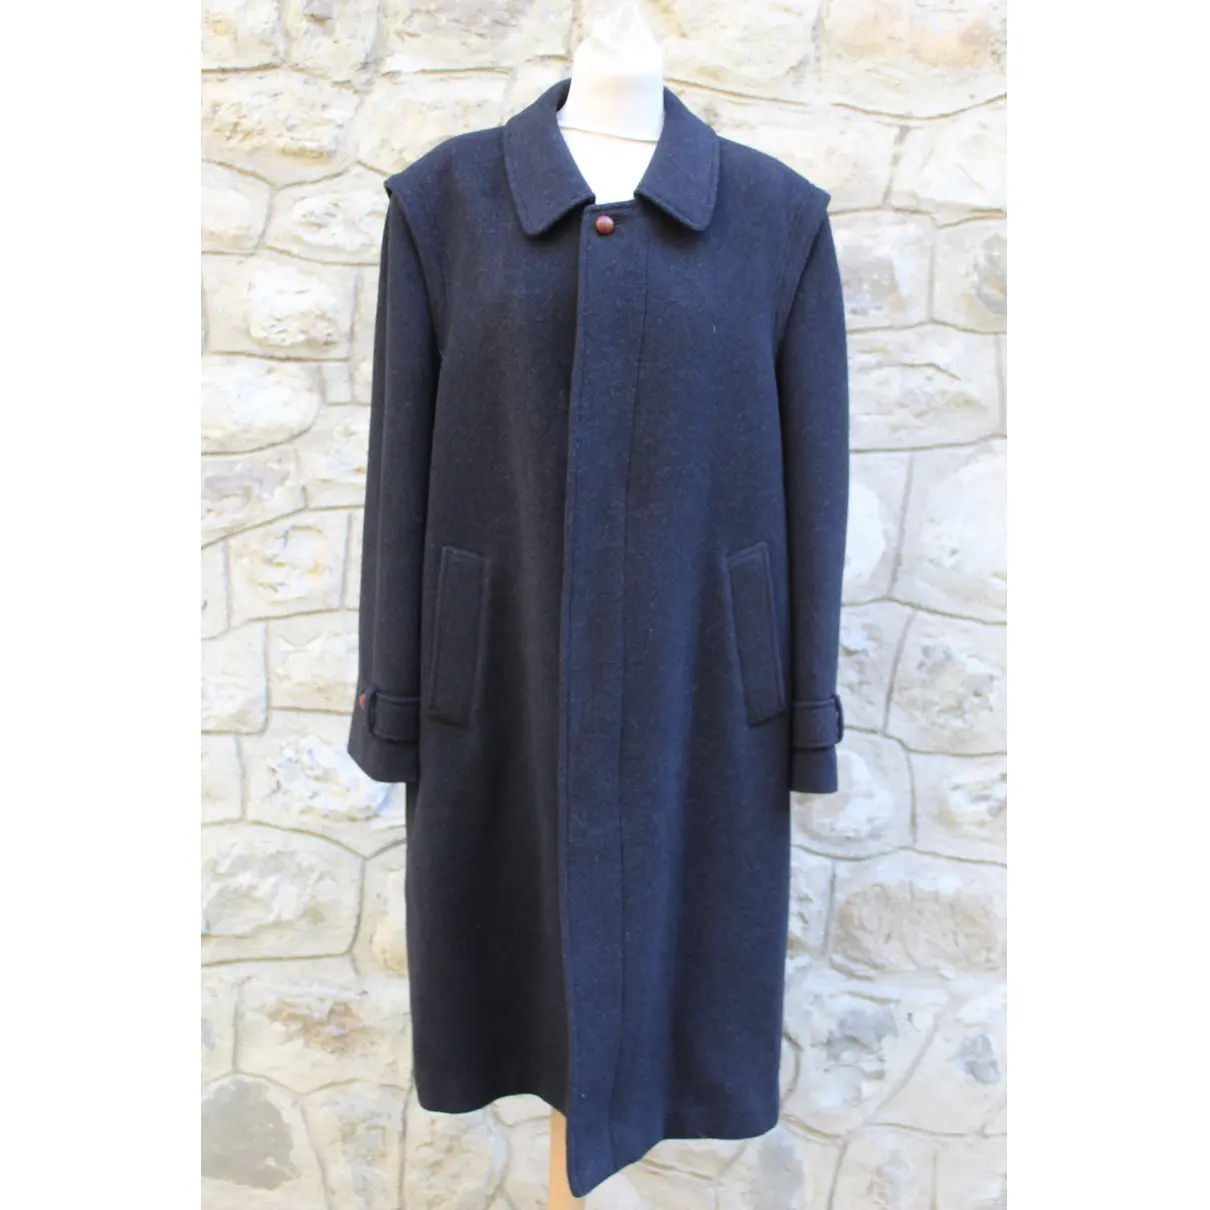 Buy Schneiders Wool coat online